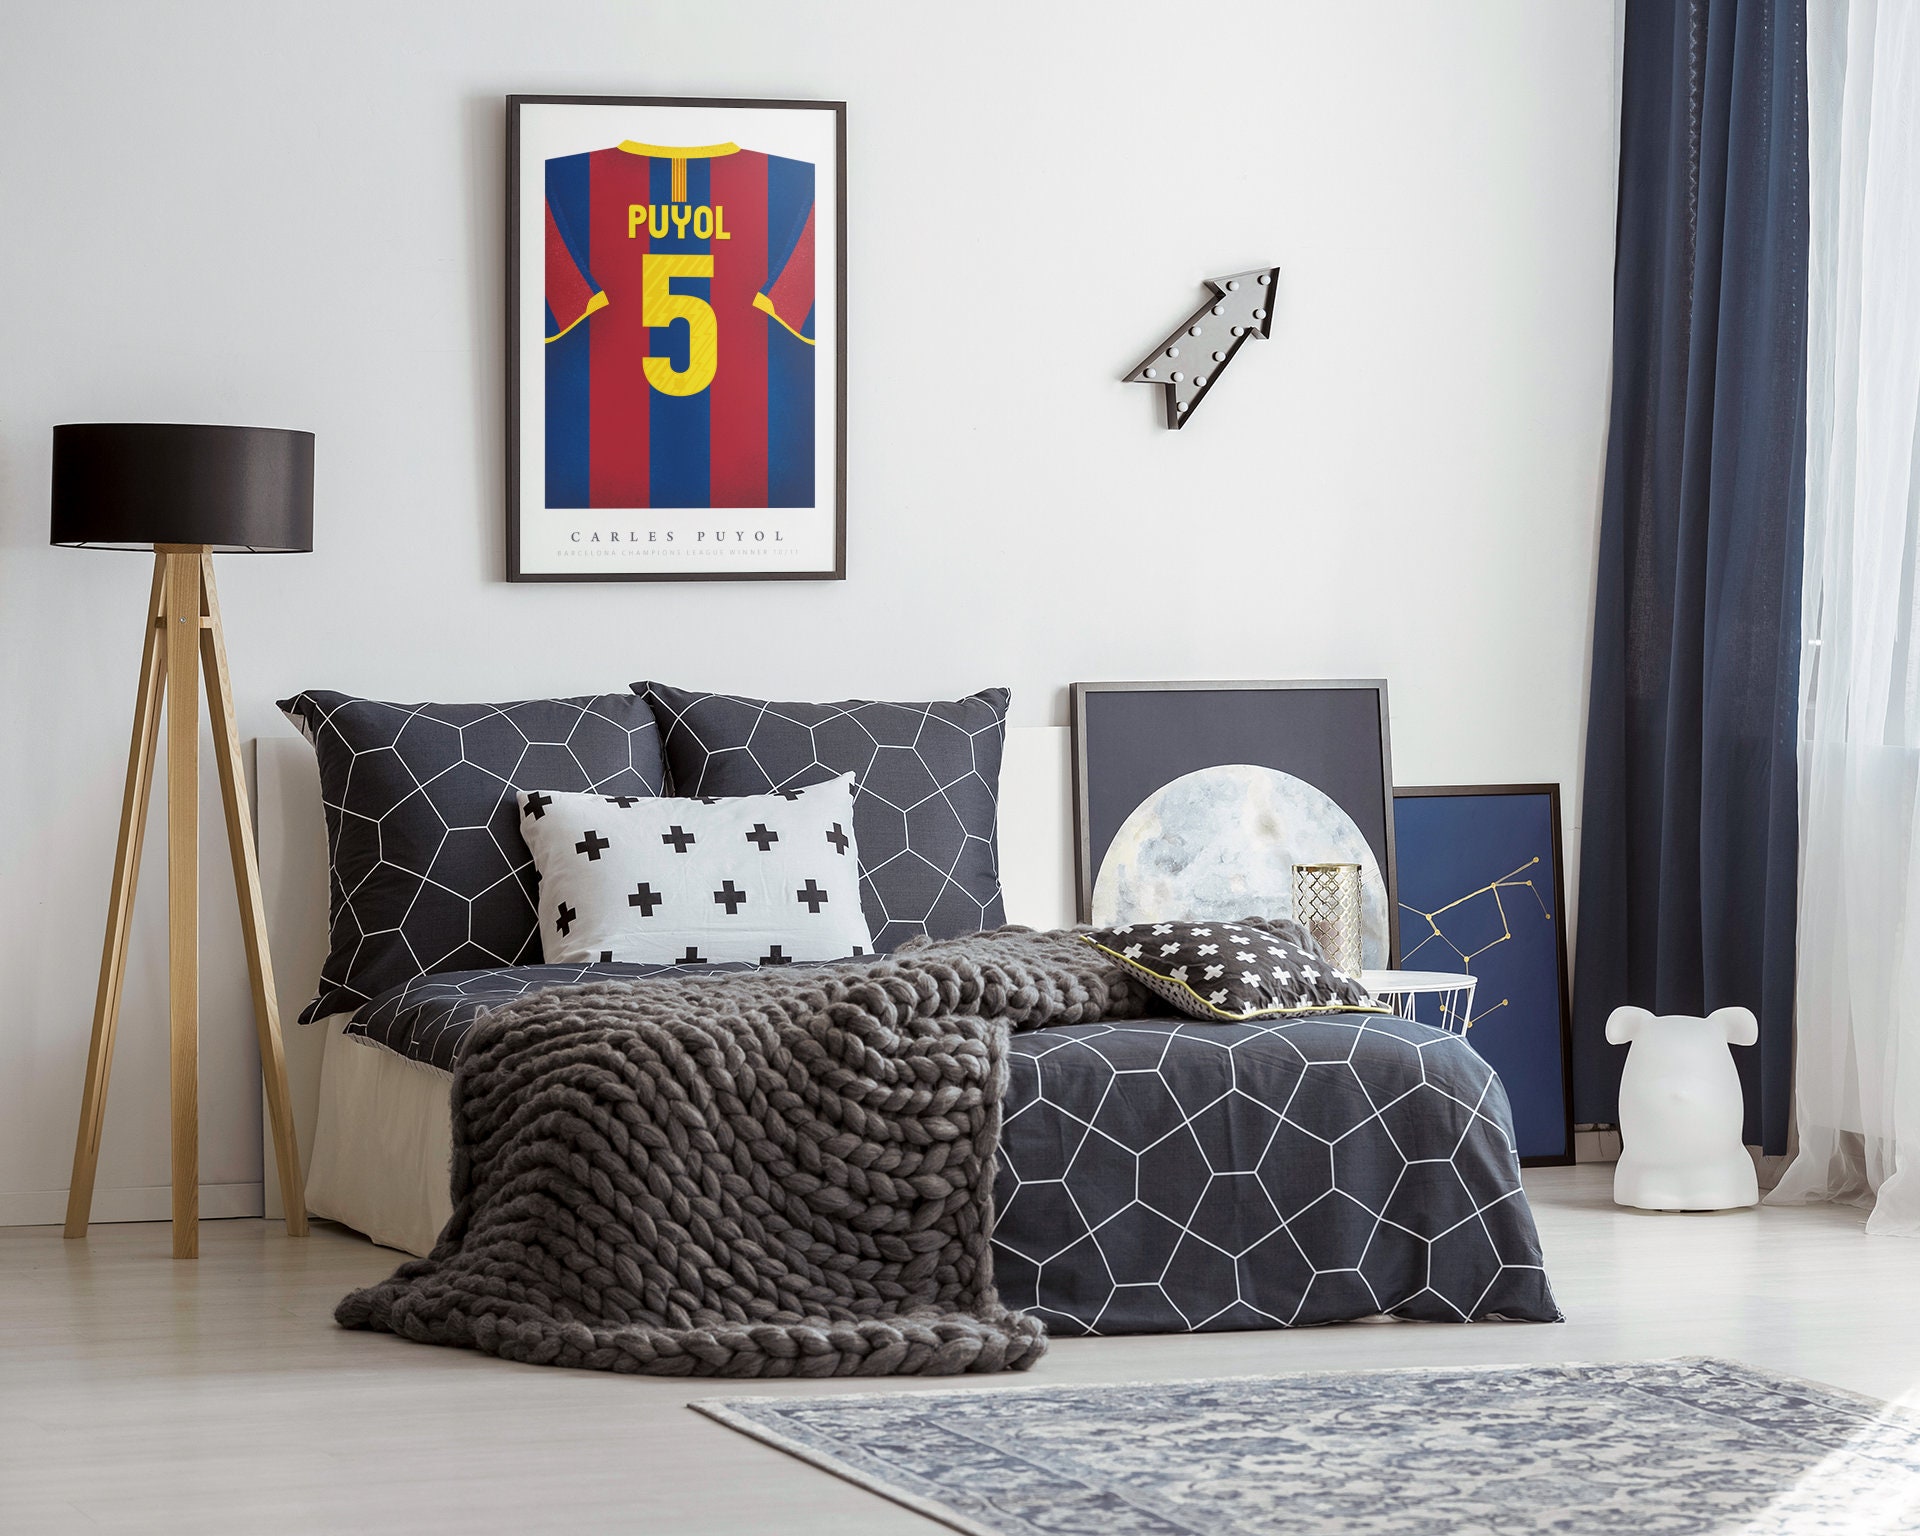 Quadro decorativo Emoldurado Puyol Jogador De Futebol Barcelona